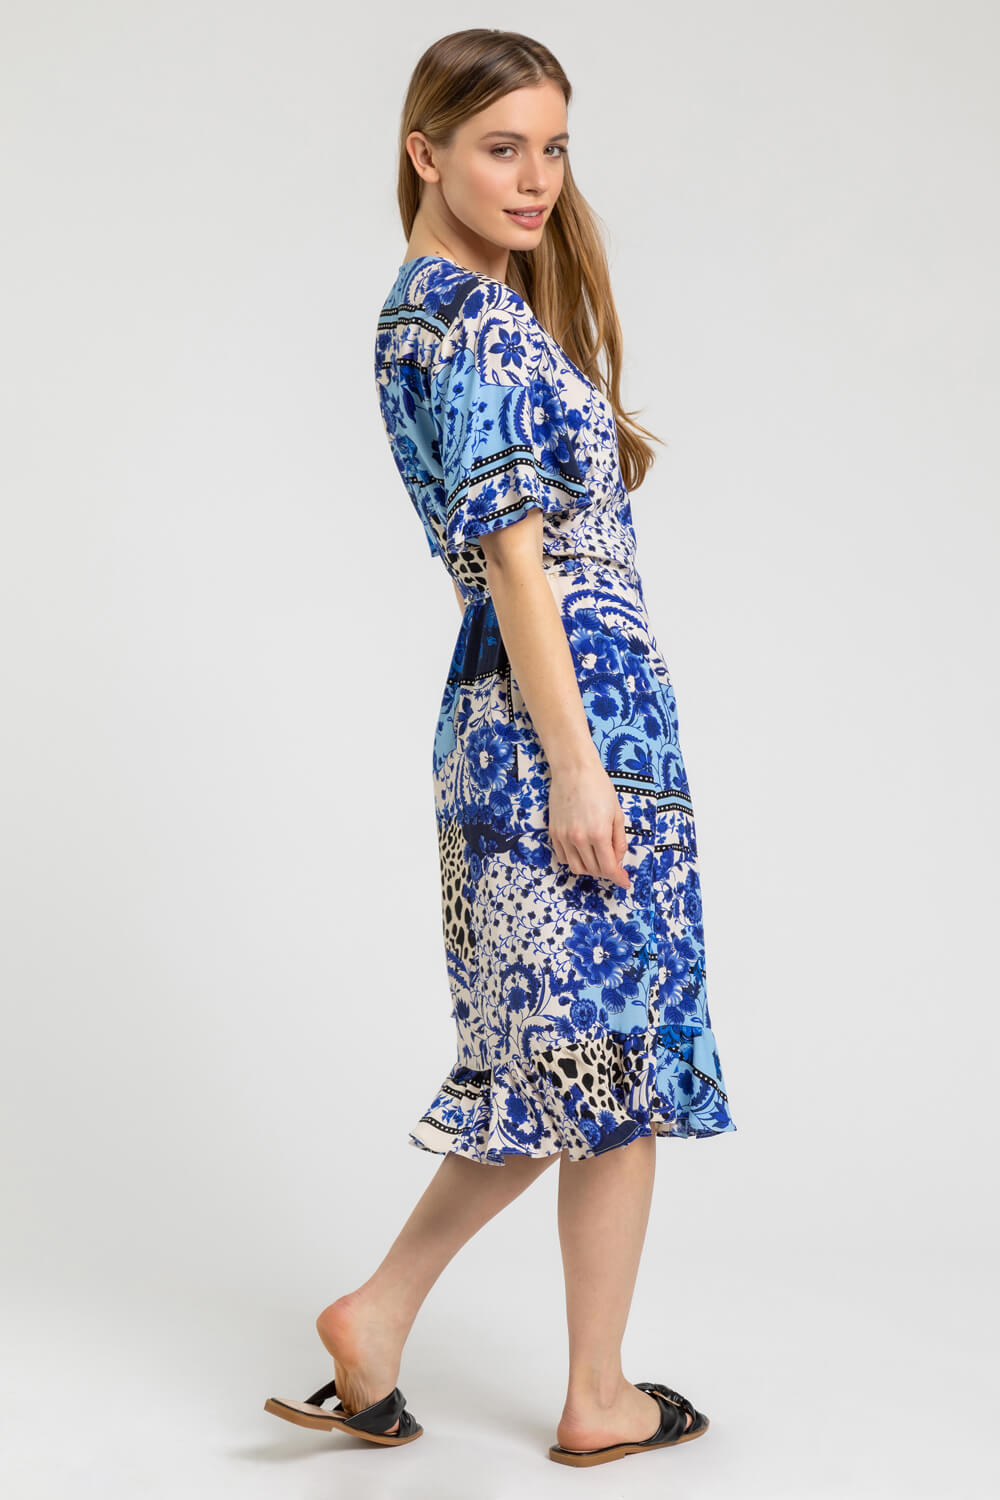 Blue Petite Floral Contrast Print Wrap Dress, Image 2 of 5